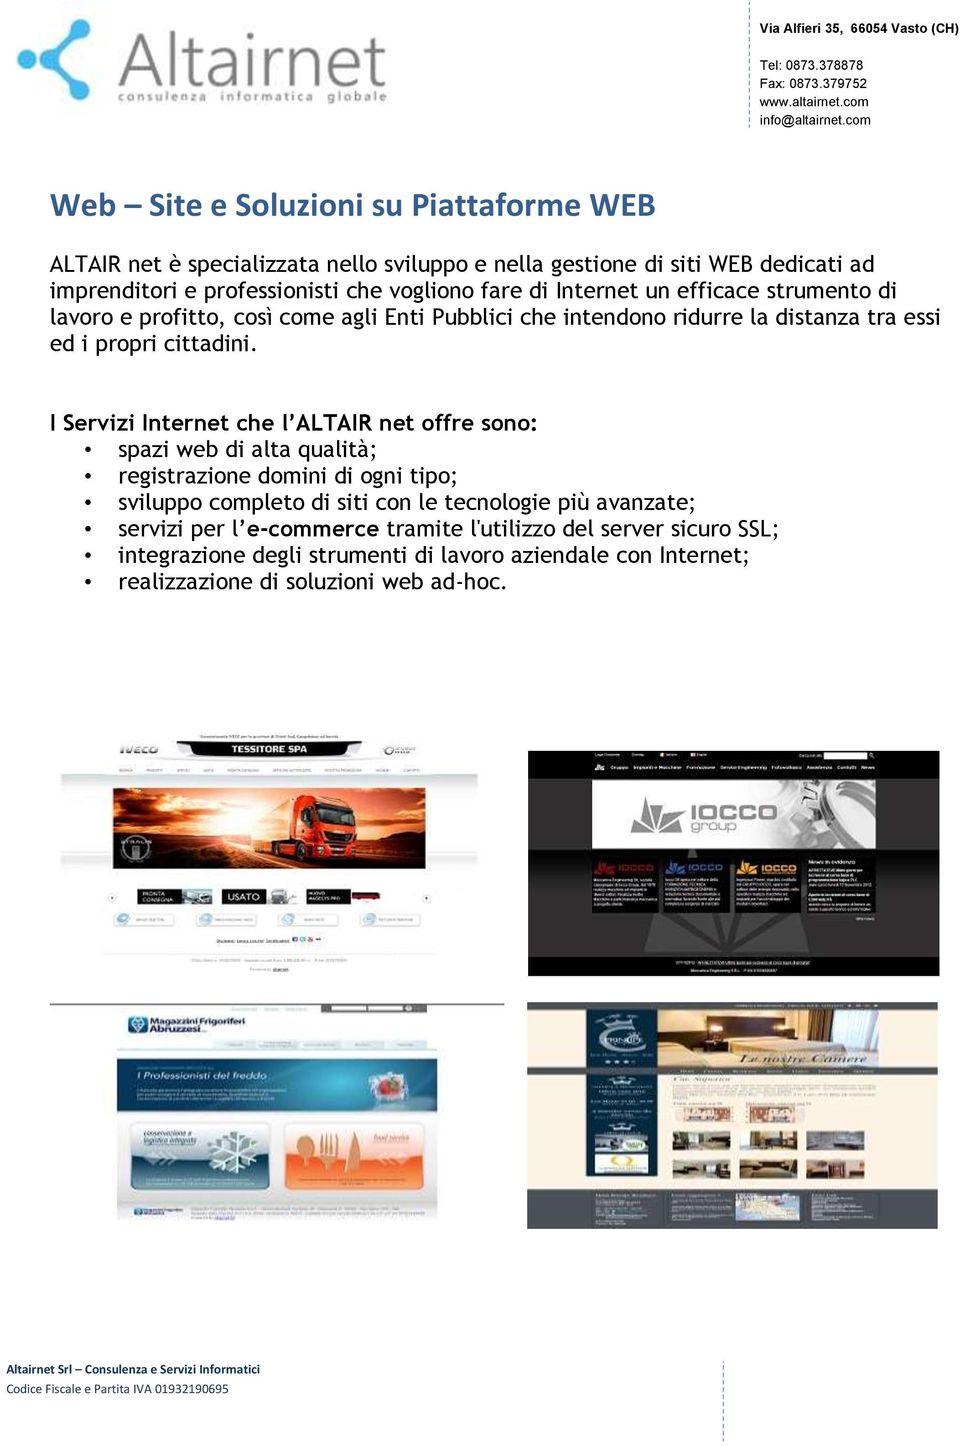 I Servizi Internet che l ALTAIR net offre sono: spazi web di alta qualità; registrazione domini di ogni tipo; sviluppo completo di siti con le tecnologie più